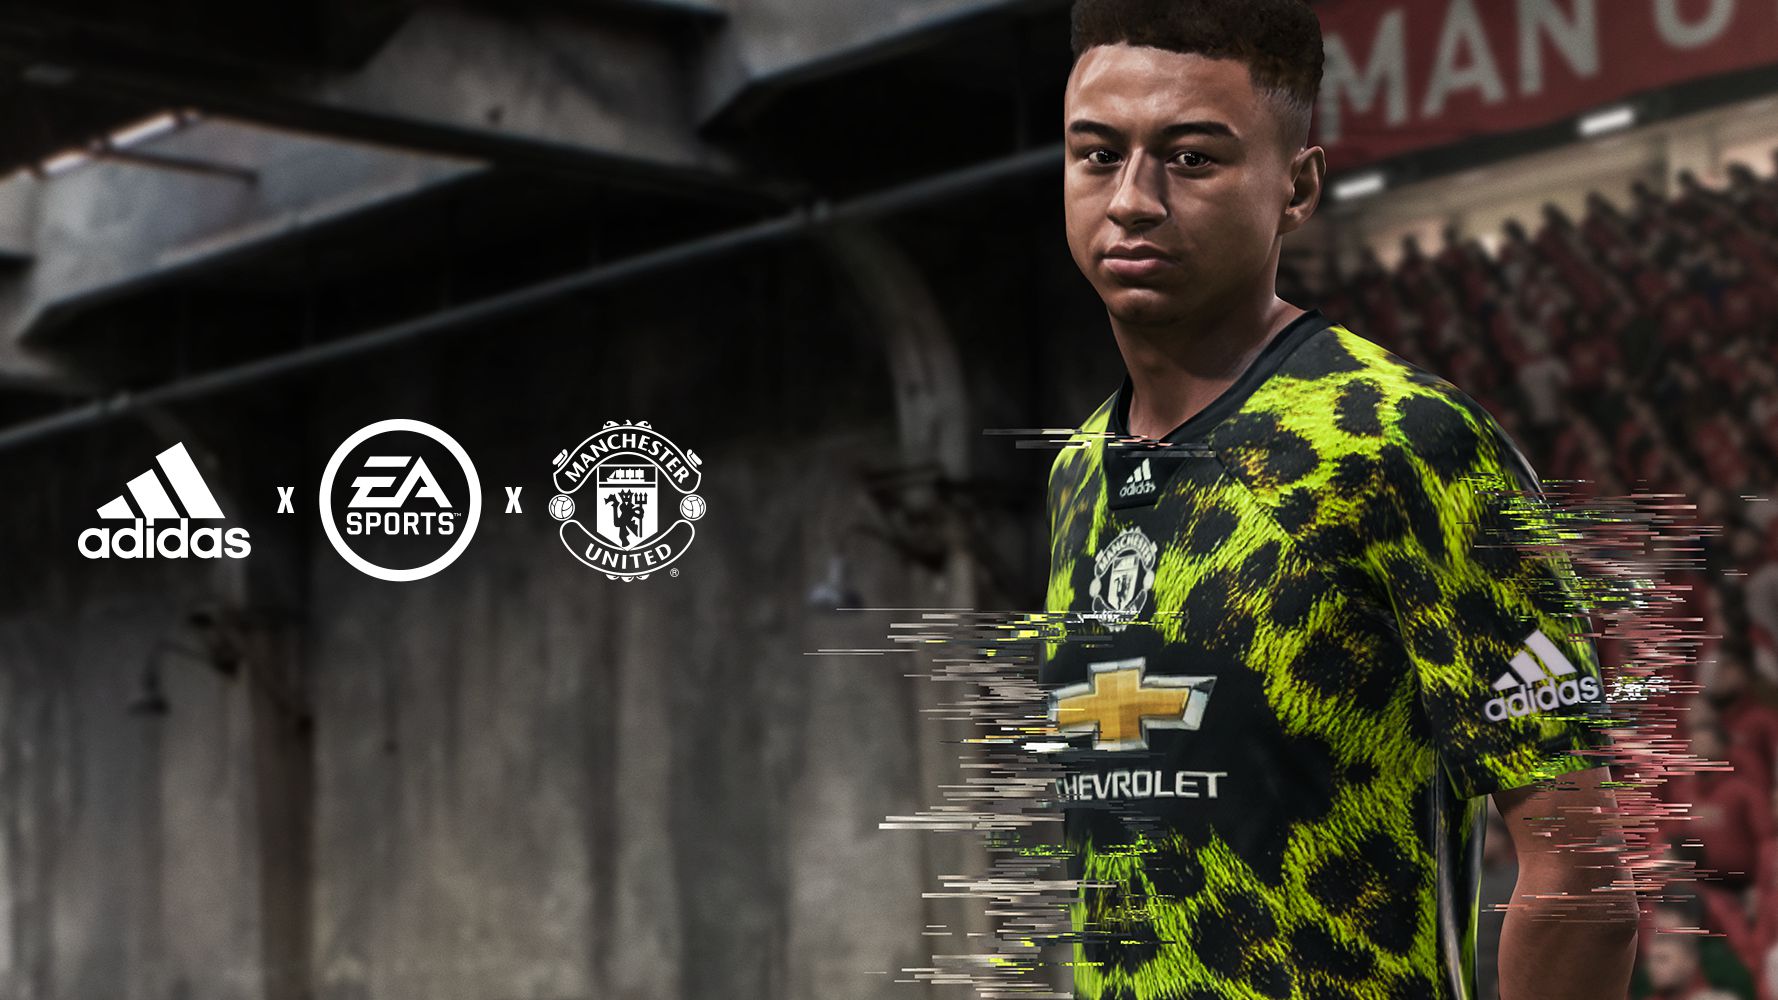 odio Reducción de precios darse cuenta Manchester United teams up with adidas and EA Sports for unique digital  shirt collaboration | Manchester United